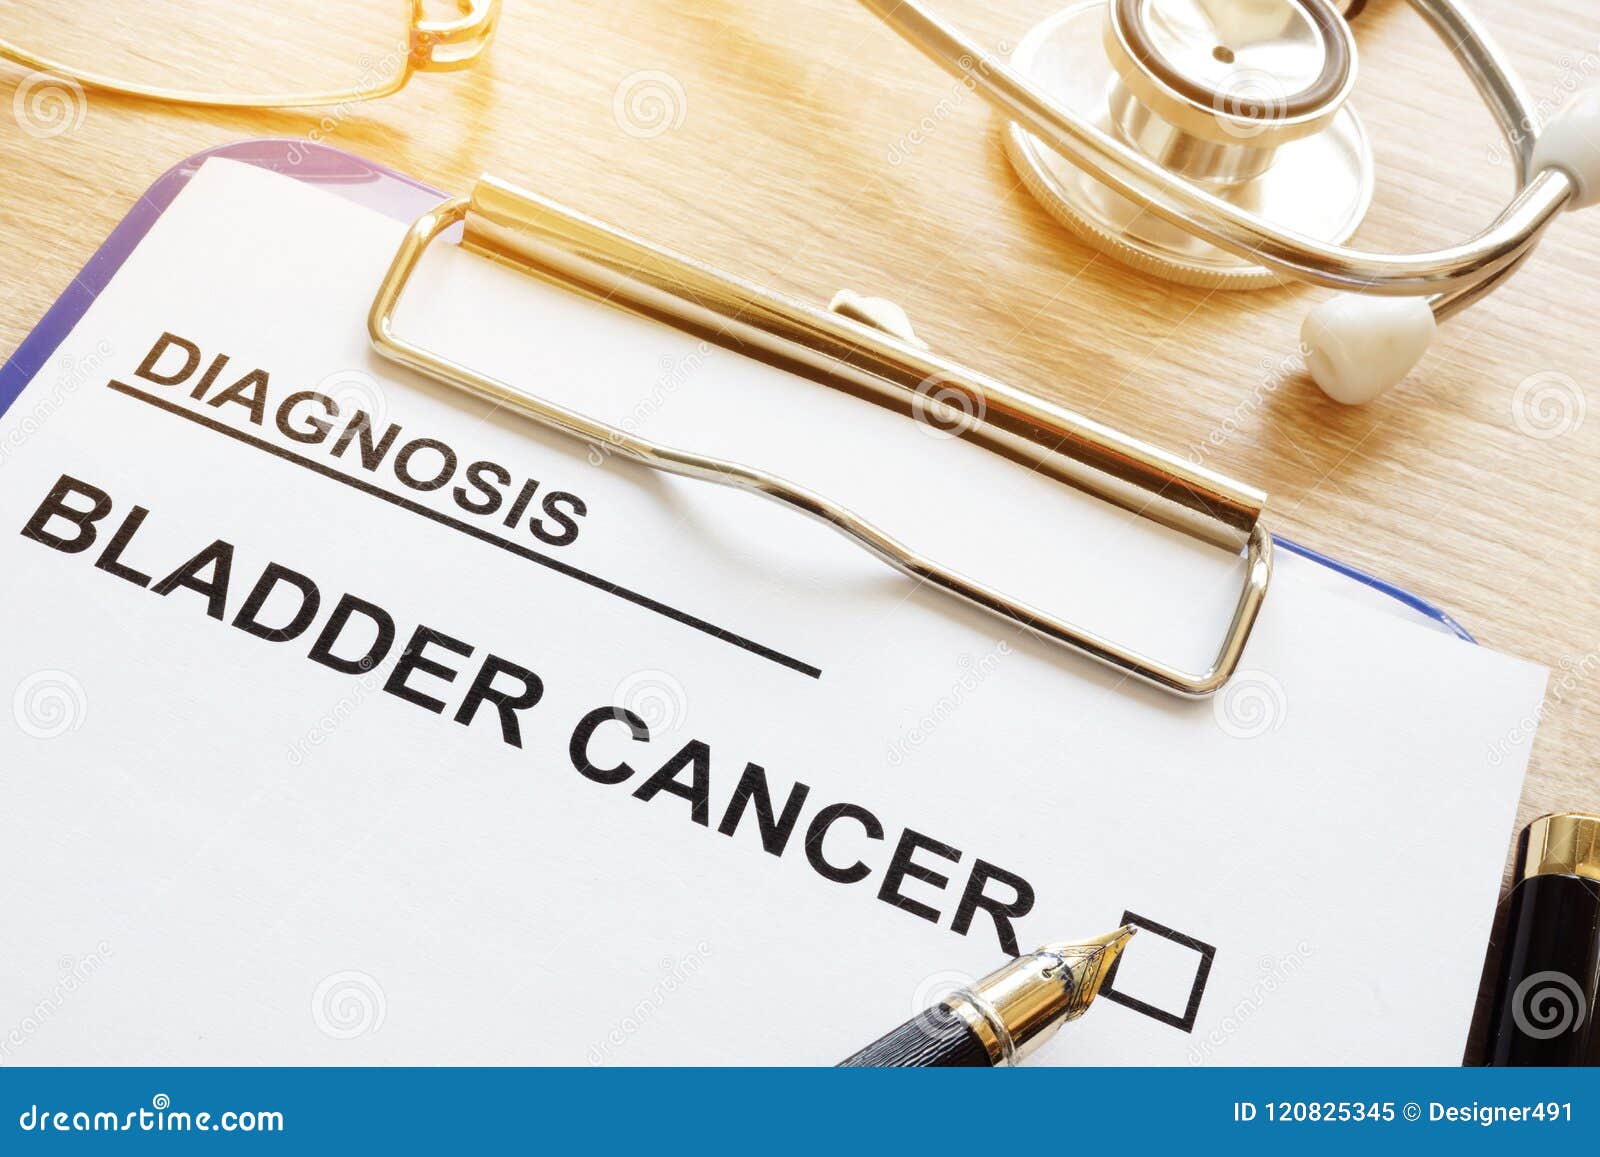 diagnosis bladder cancer on a desk.